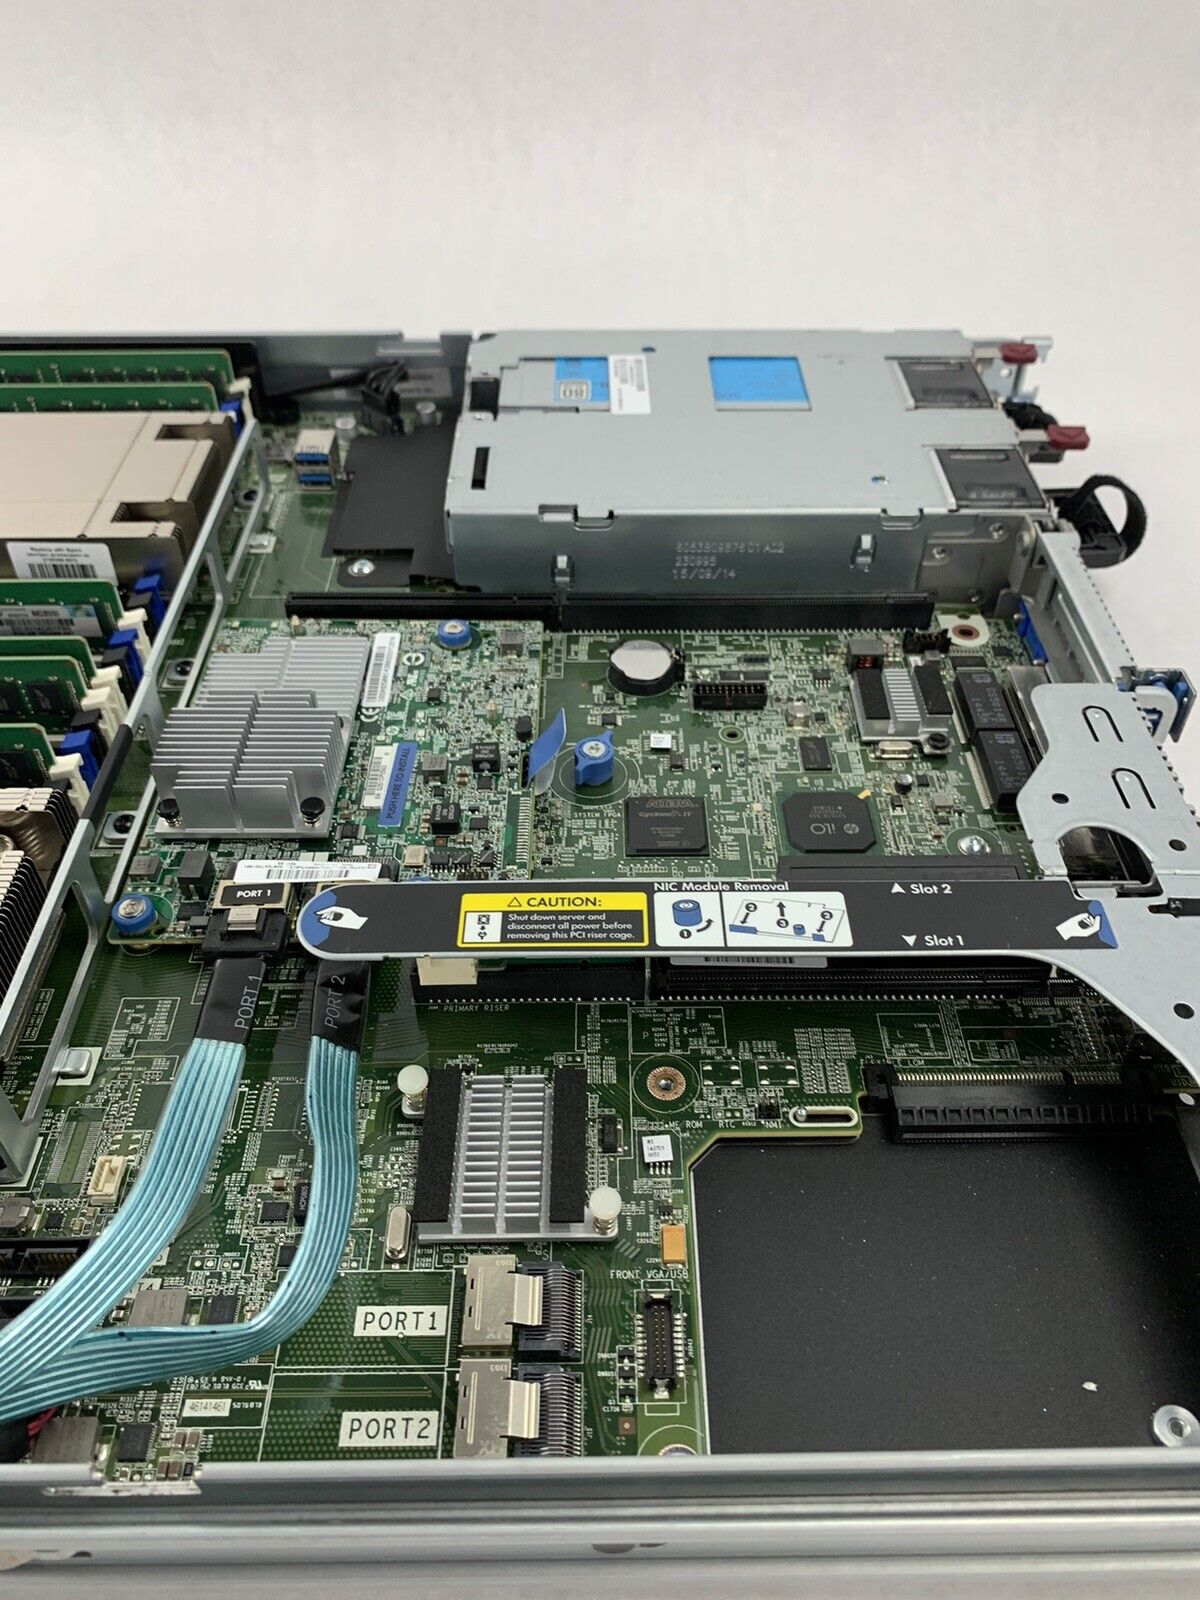 HP ProLiant DL360 Gen9 Server 2x E5-2620 v3 2.4 GHz 64 GB RAM NO HDD NO OS